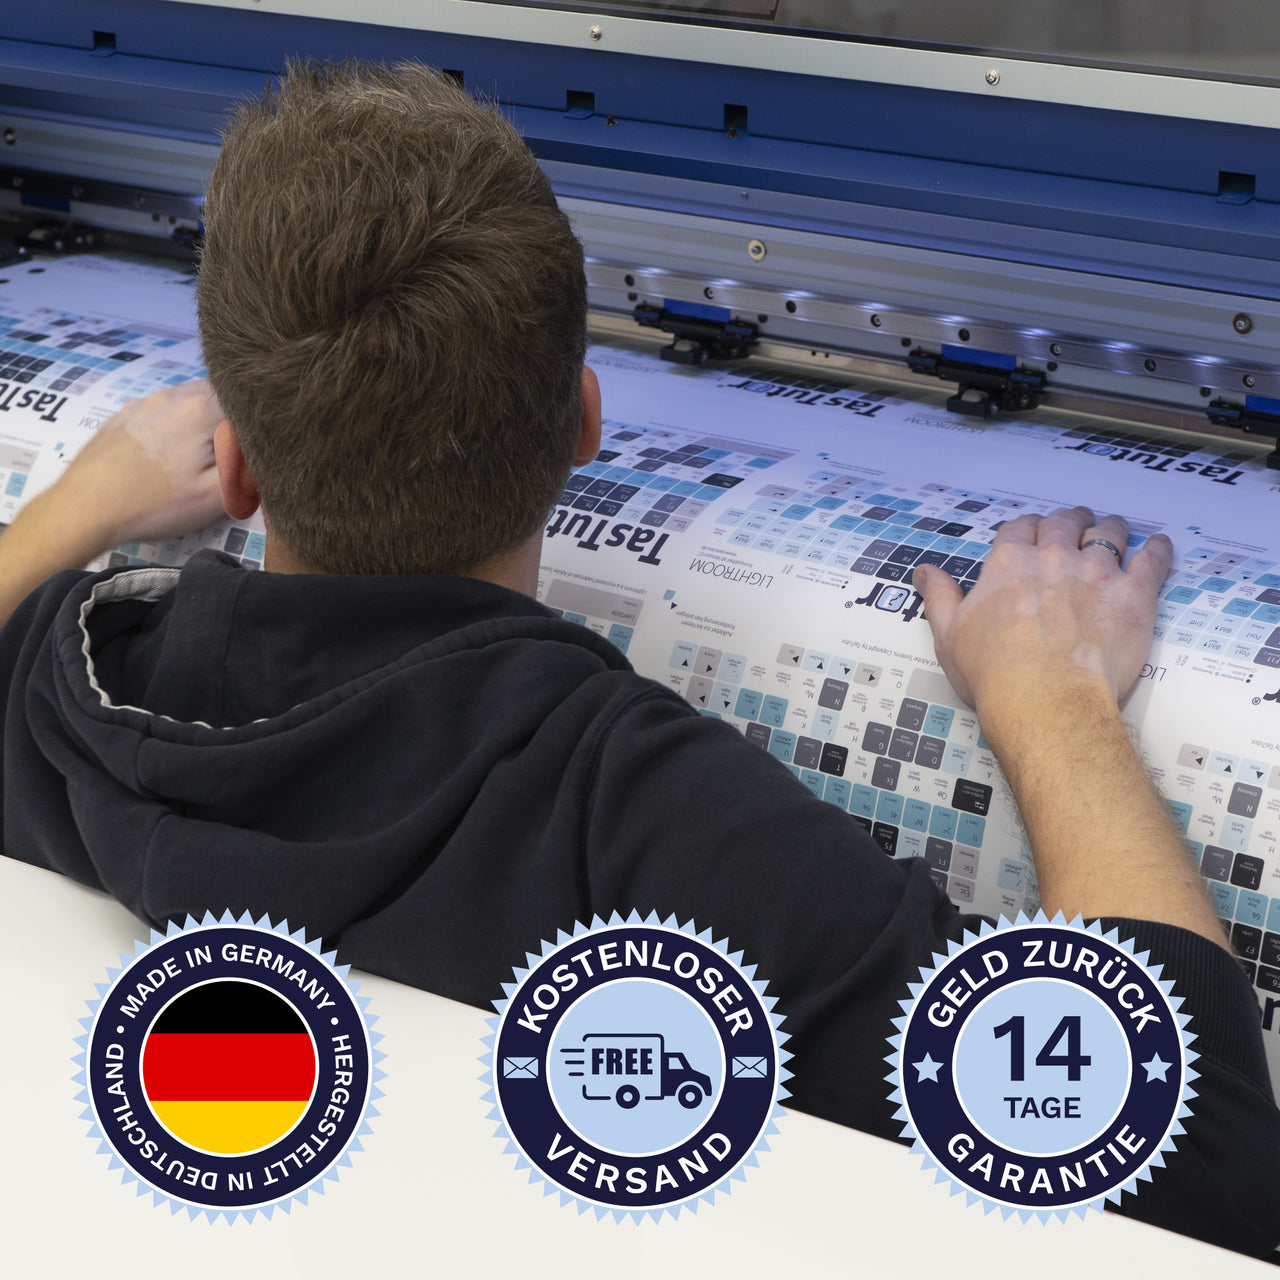 Sonar Tastaturaufkleber werden in Deutschland hergestellt. Der Versand ist kostenlos und wir gewährleisten 14 Tage Geld zurück Garantie.